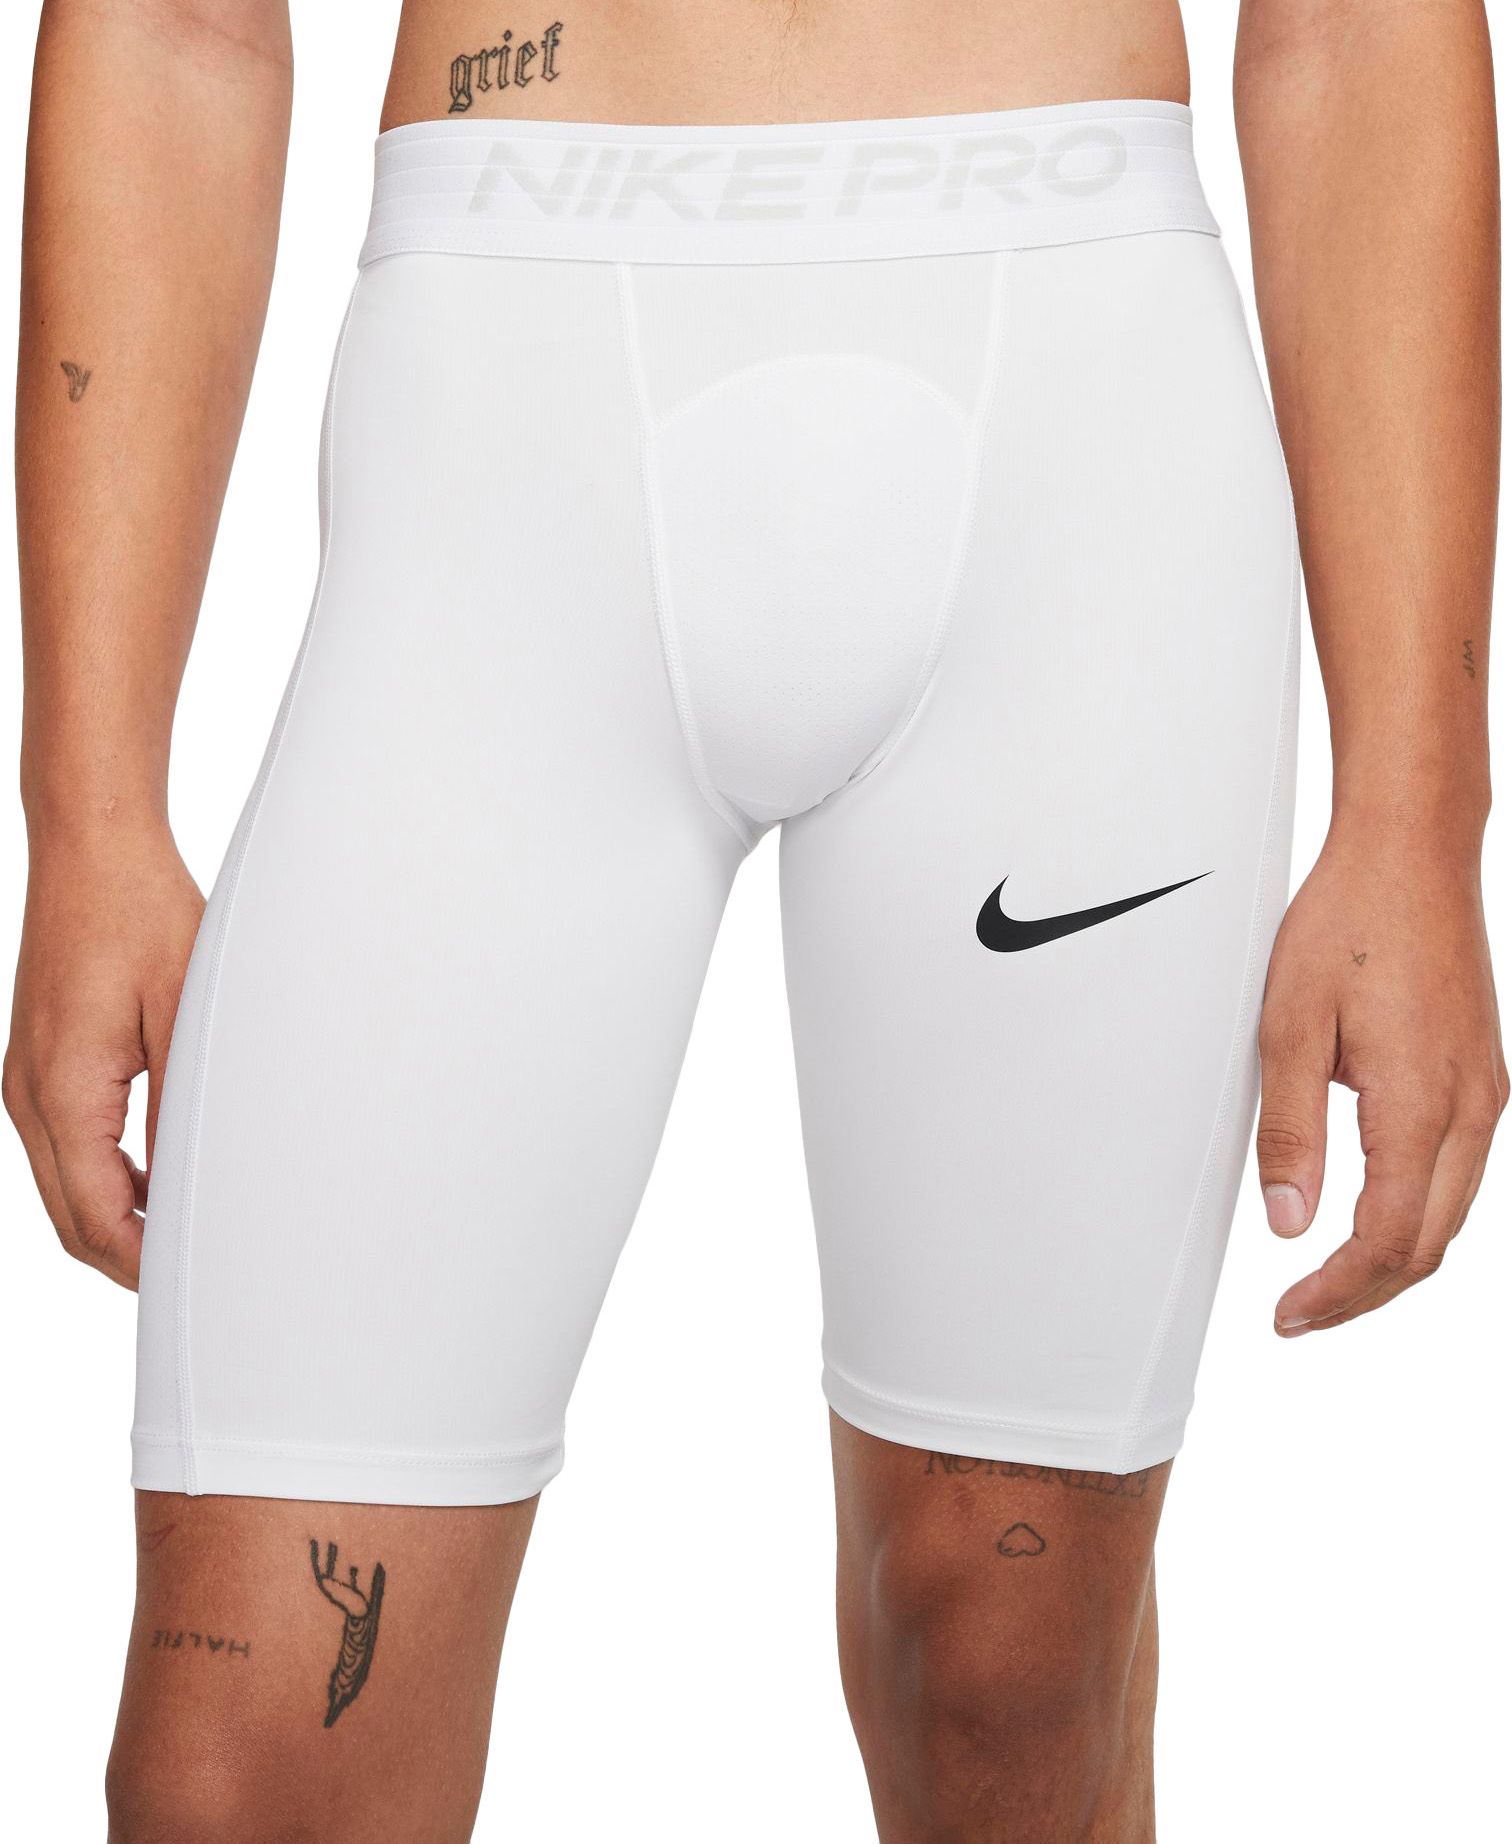 nike pro men's long shorts